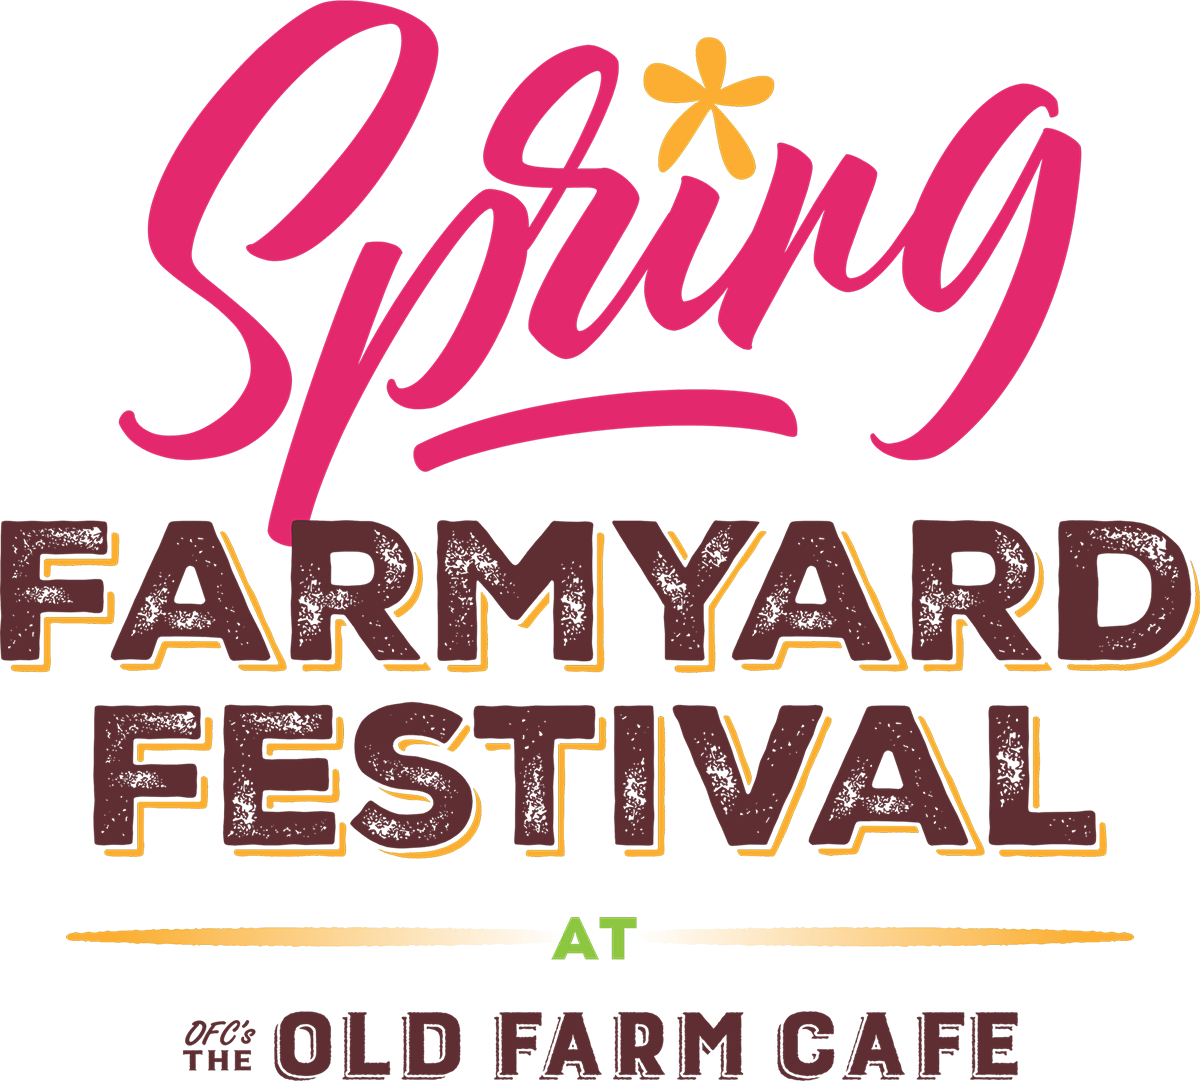 OFC Cafe Spring Farmyard Festival